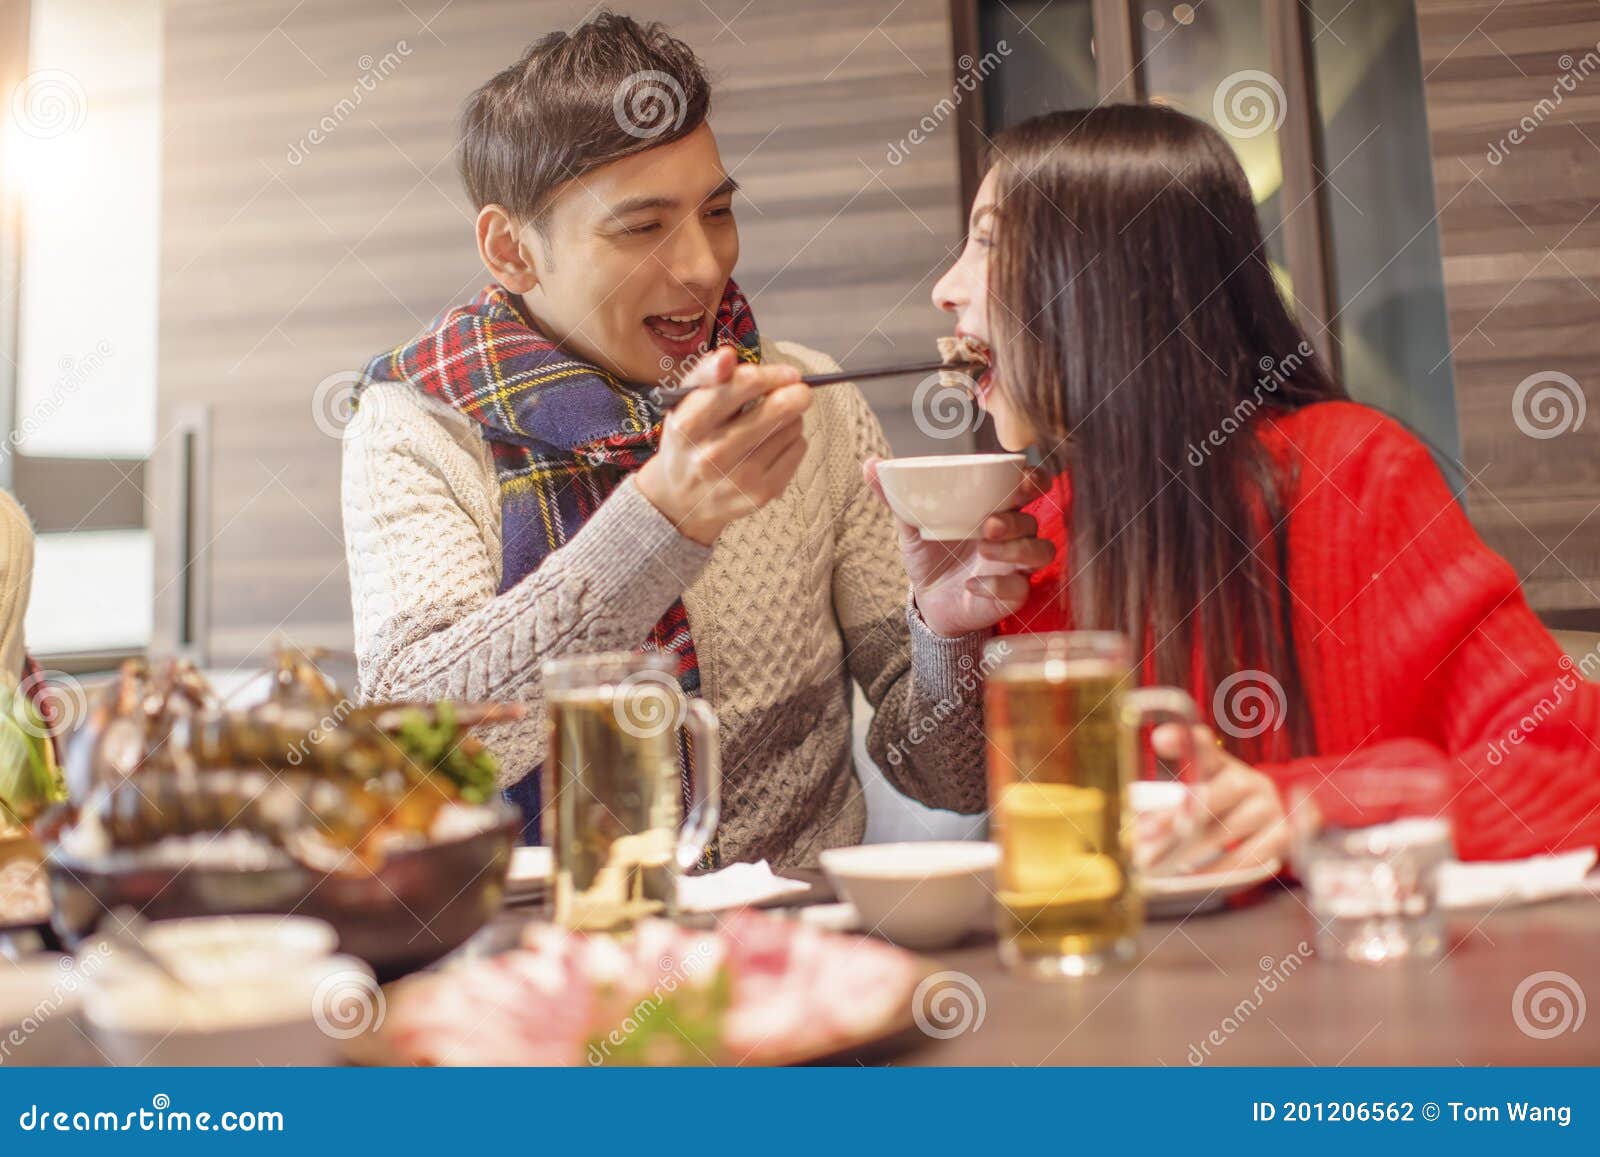 情侶約會男性喂女性吃西餐圖片素材-JPG圖片尺寸8192 × 5464px-高清圖案501809460-zh.lovepik.com